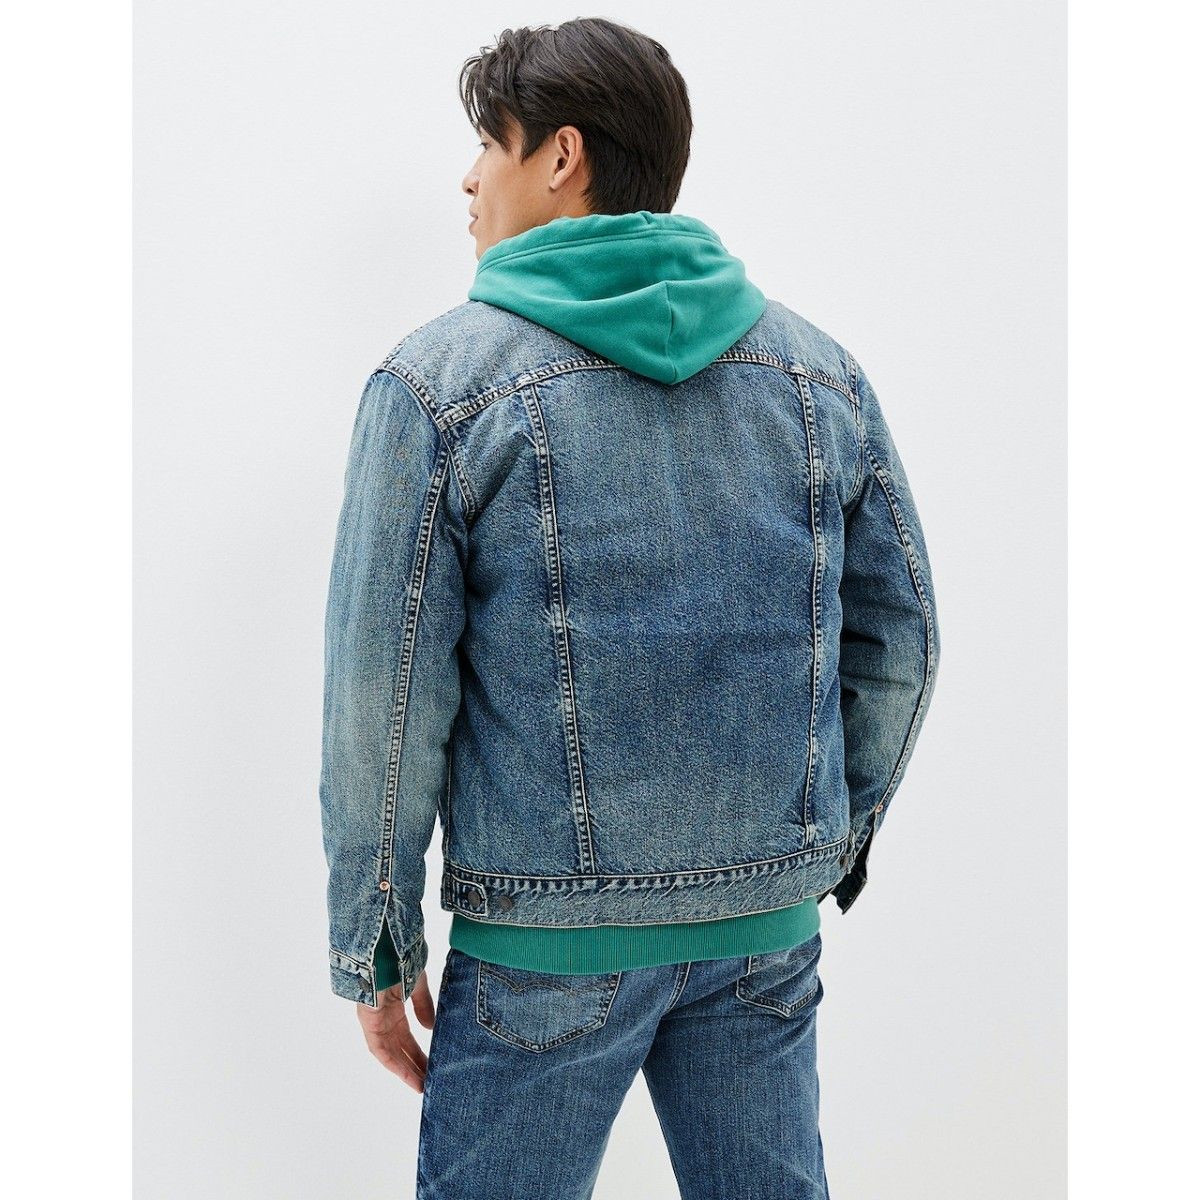 Buy ebossy Men's Sherpa Denim Trucker Jacket Thermal Fleece Lined Jean  Jacket (X-Small, Light Blue) at Amazon.in